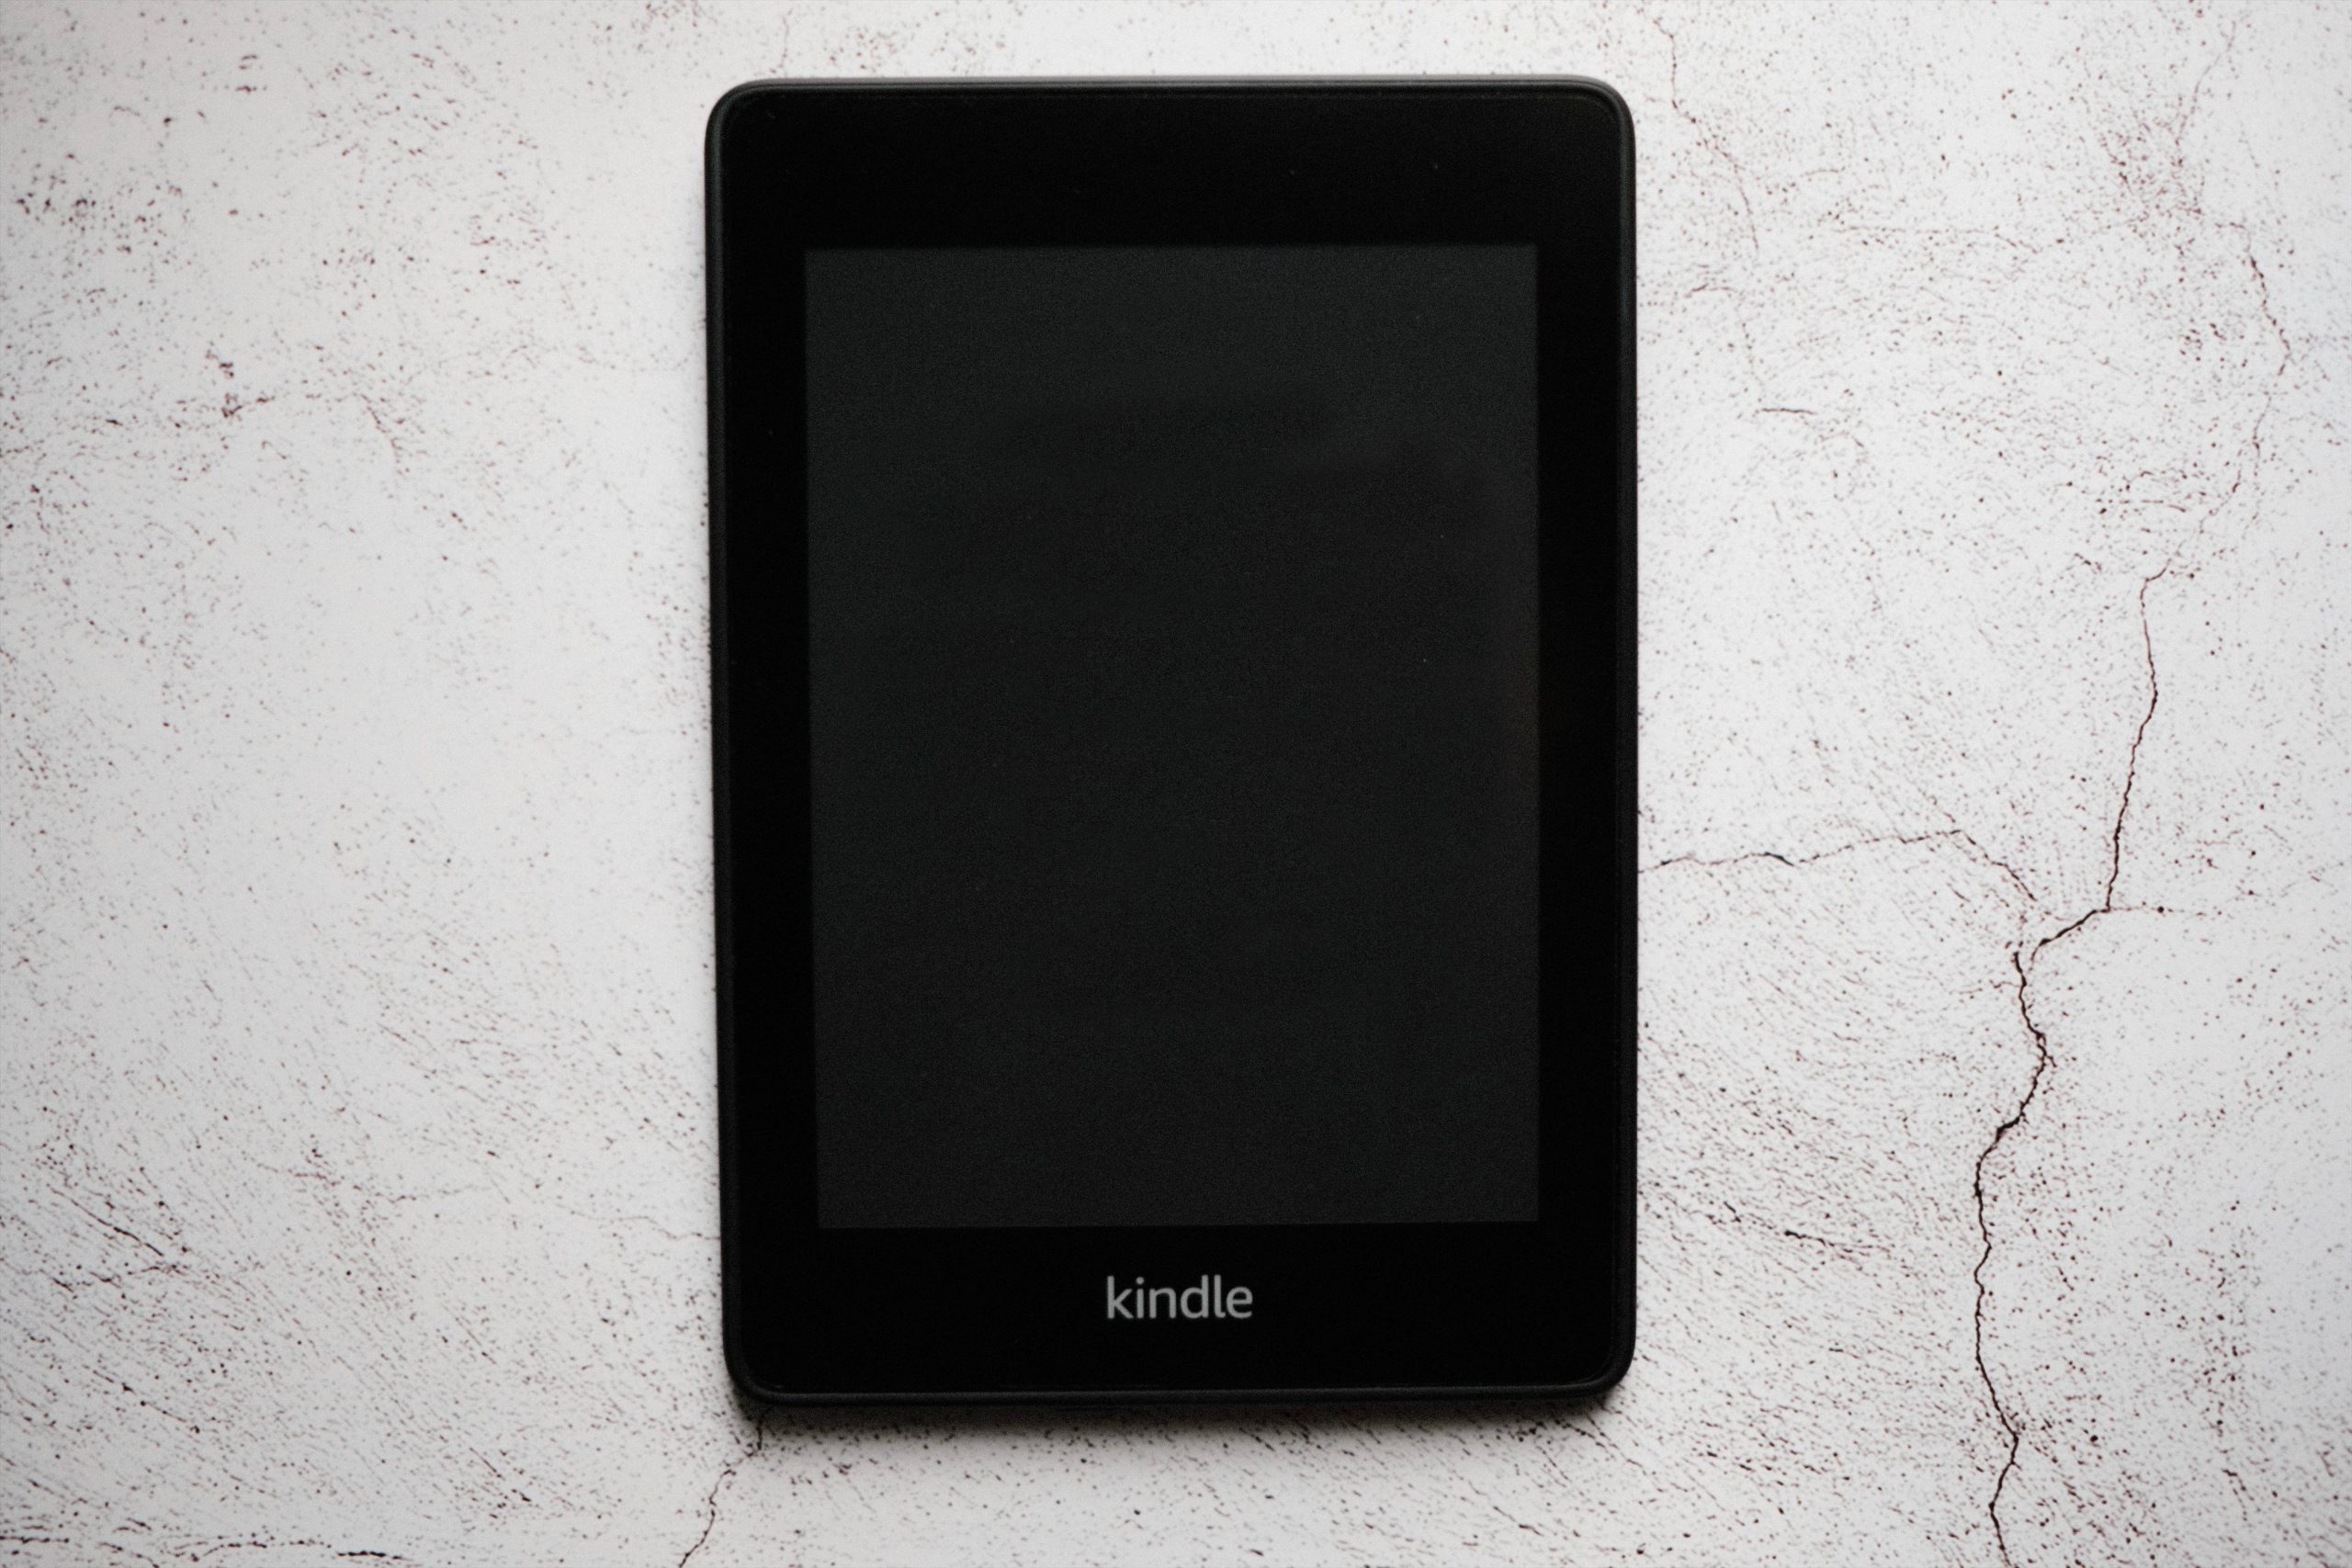 【電子書籍端末】Kindle Paperwhite で読書に特化